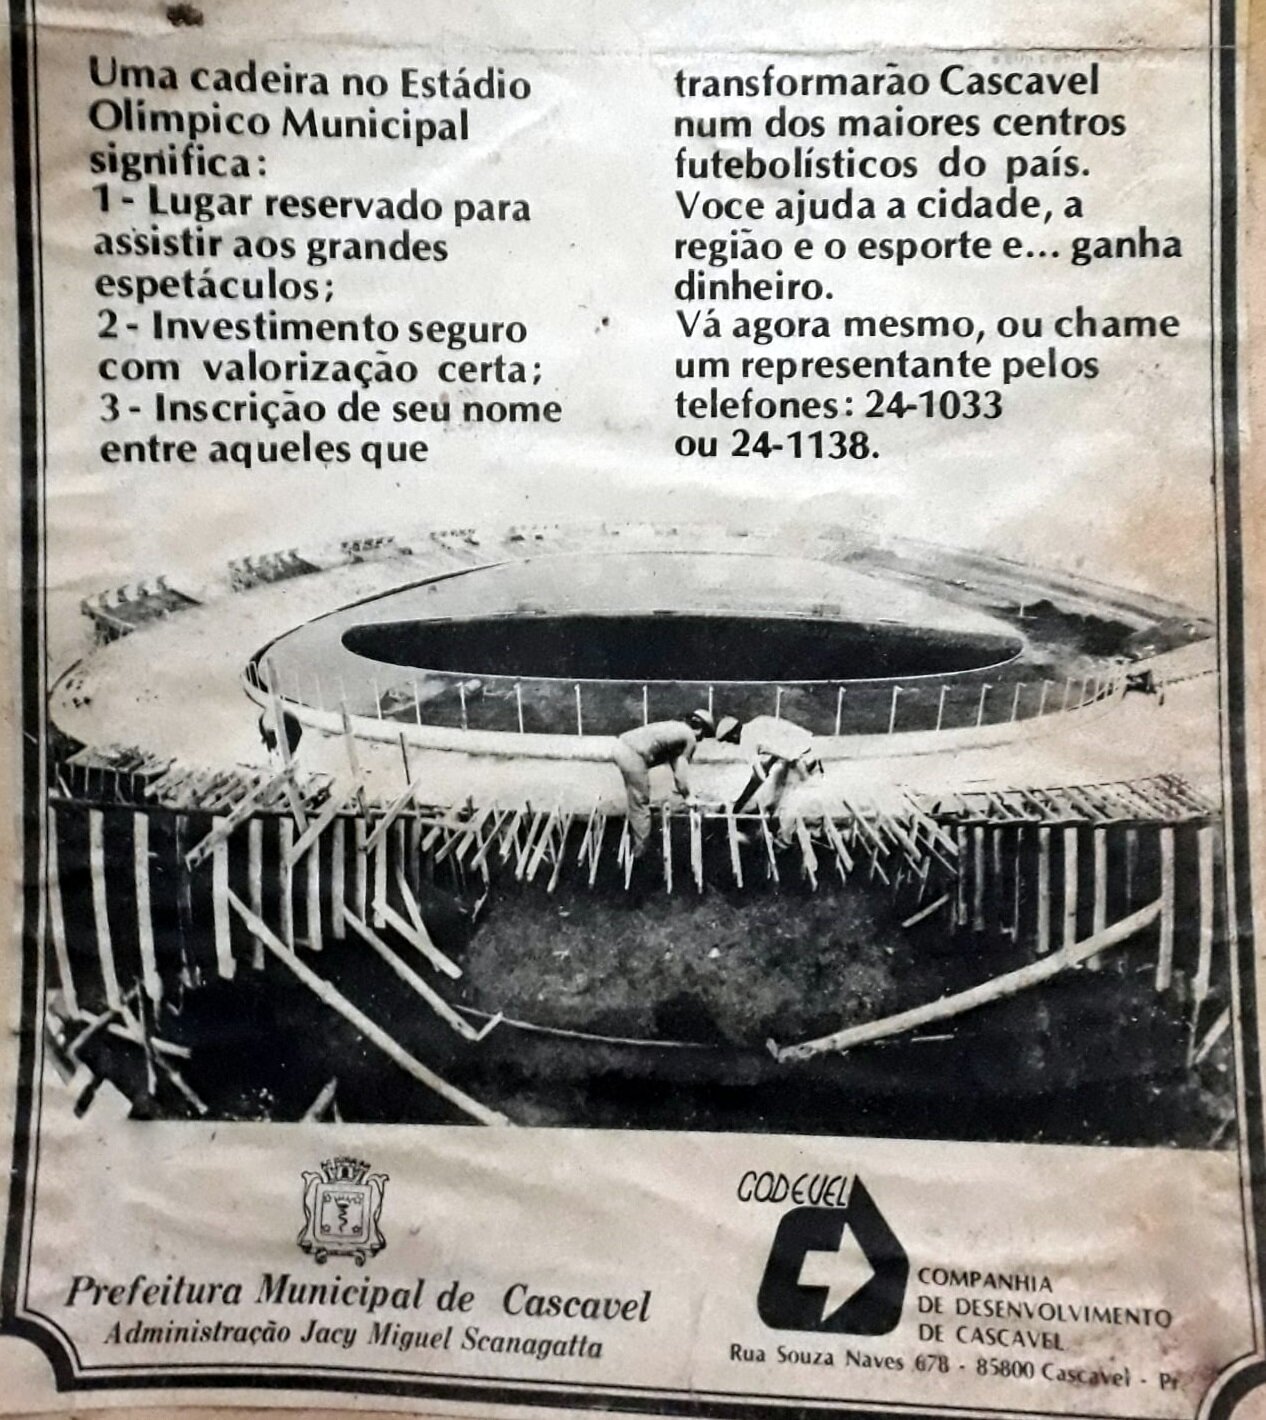 Venda de cadeiras cativas no Estádio Olímpico Regional - 1981